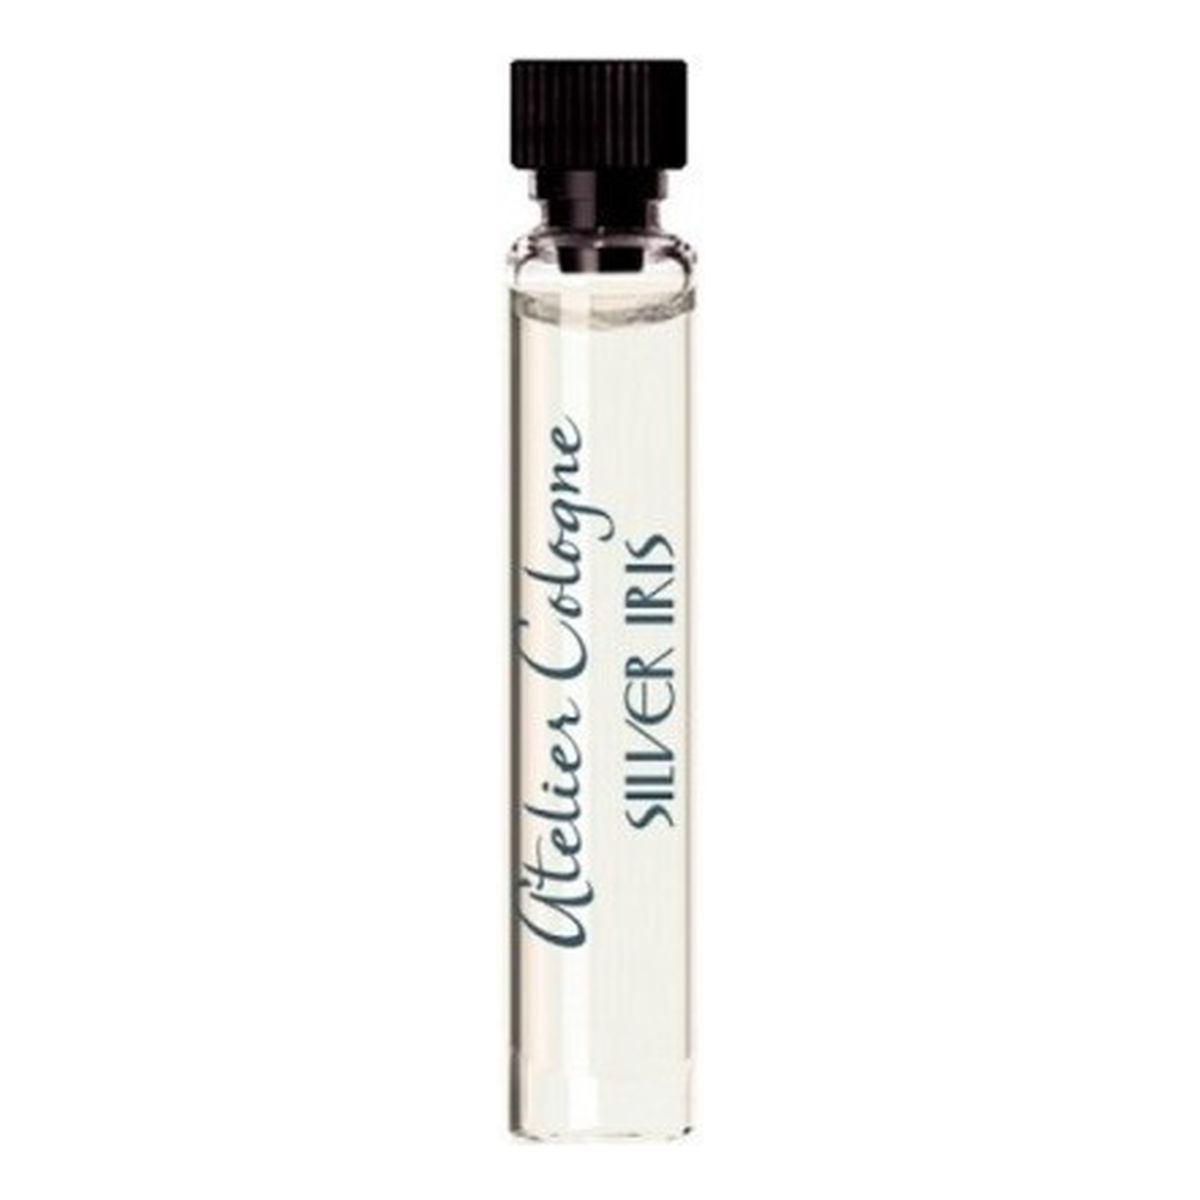 Atelier Cologne Silver Iris woda perfumowana bez sprayu 2ml